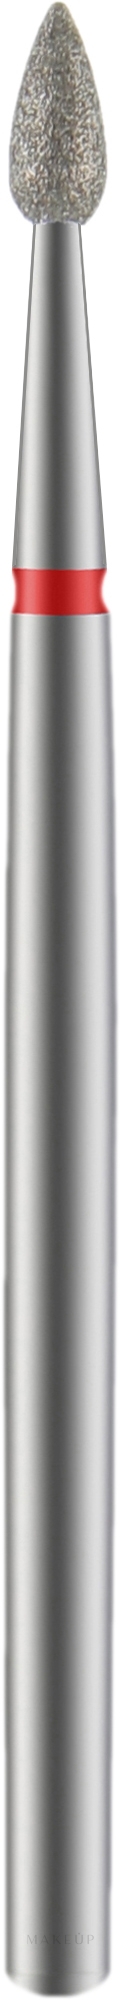 Nagelfräser Tropfen rot Durchmesser 2.3 mm Arbeitsteil 5 mm - Staleks Pro — Bild 1 St.